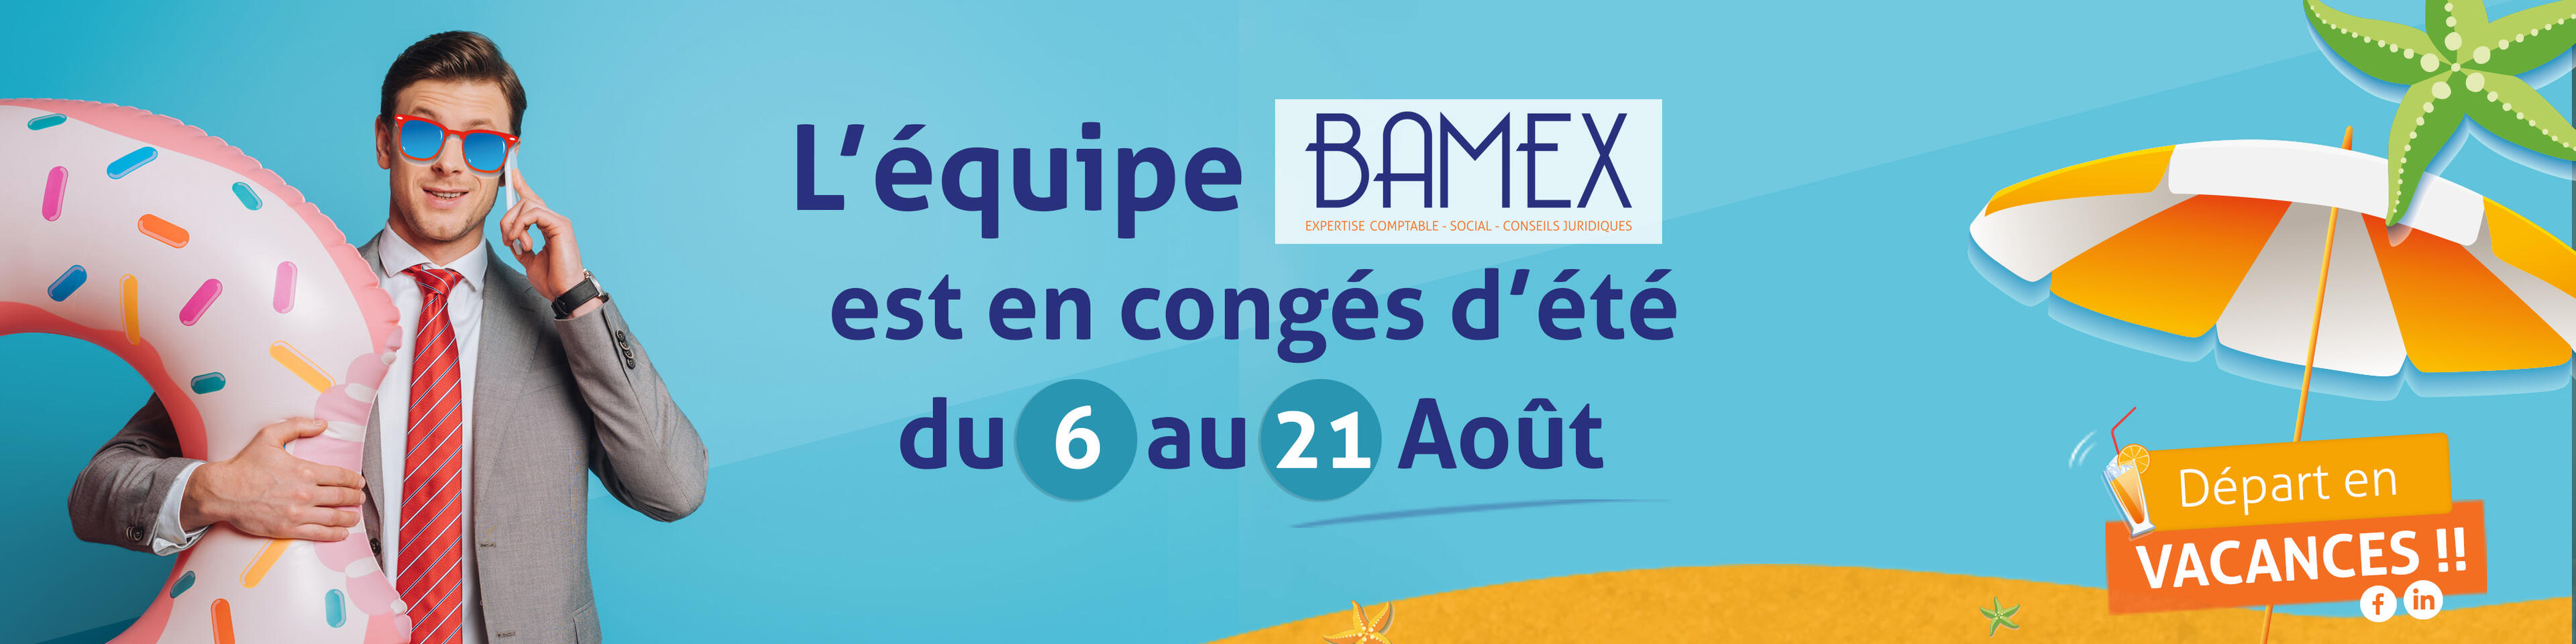 L'équipe BAMEX expertise comptable en congés d'été !